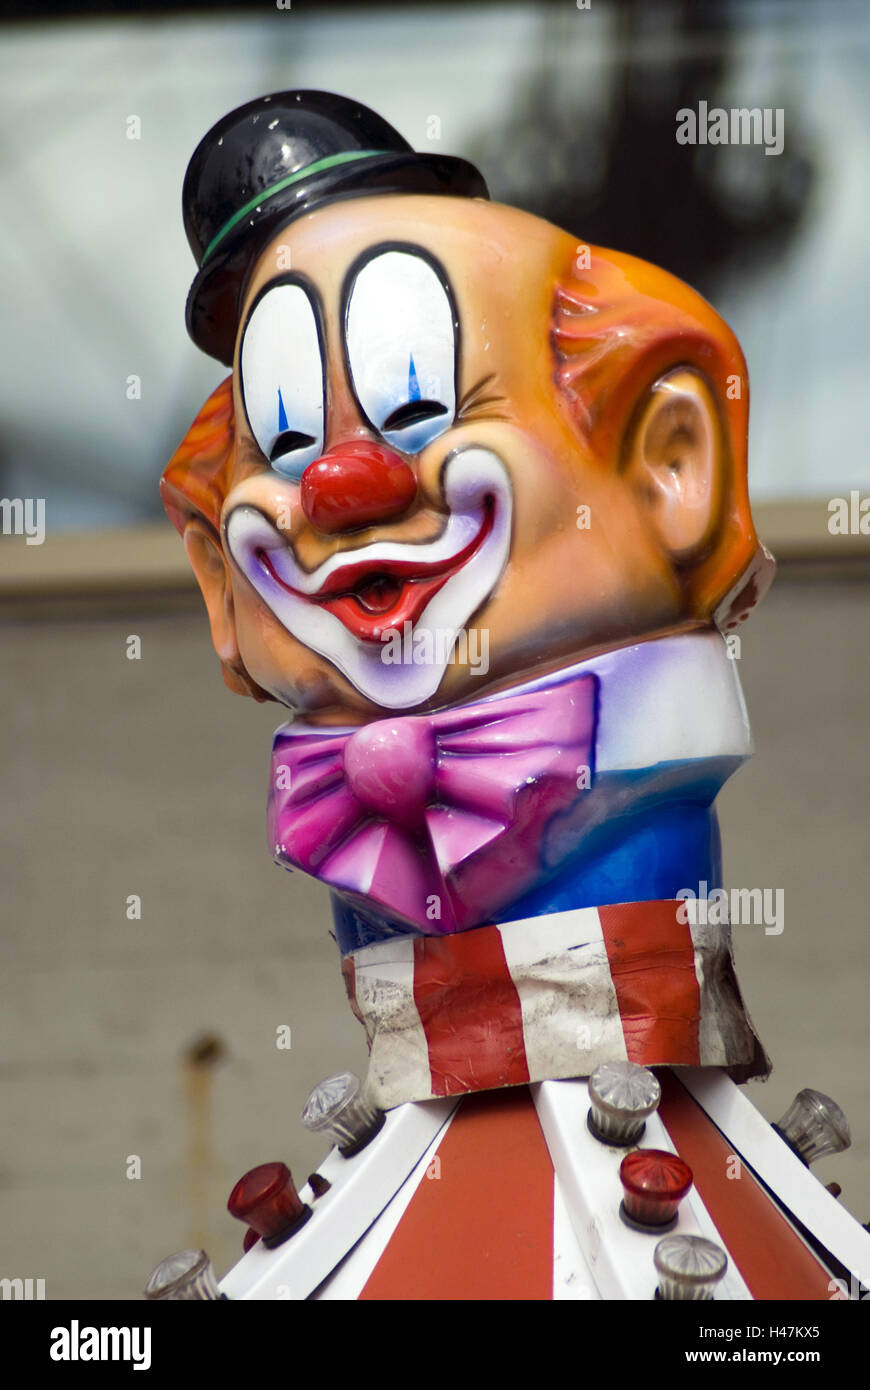 Festa pubblica, clown figura, Foto Stock